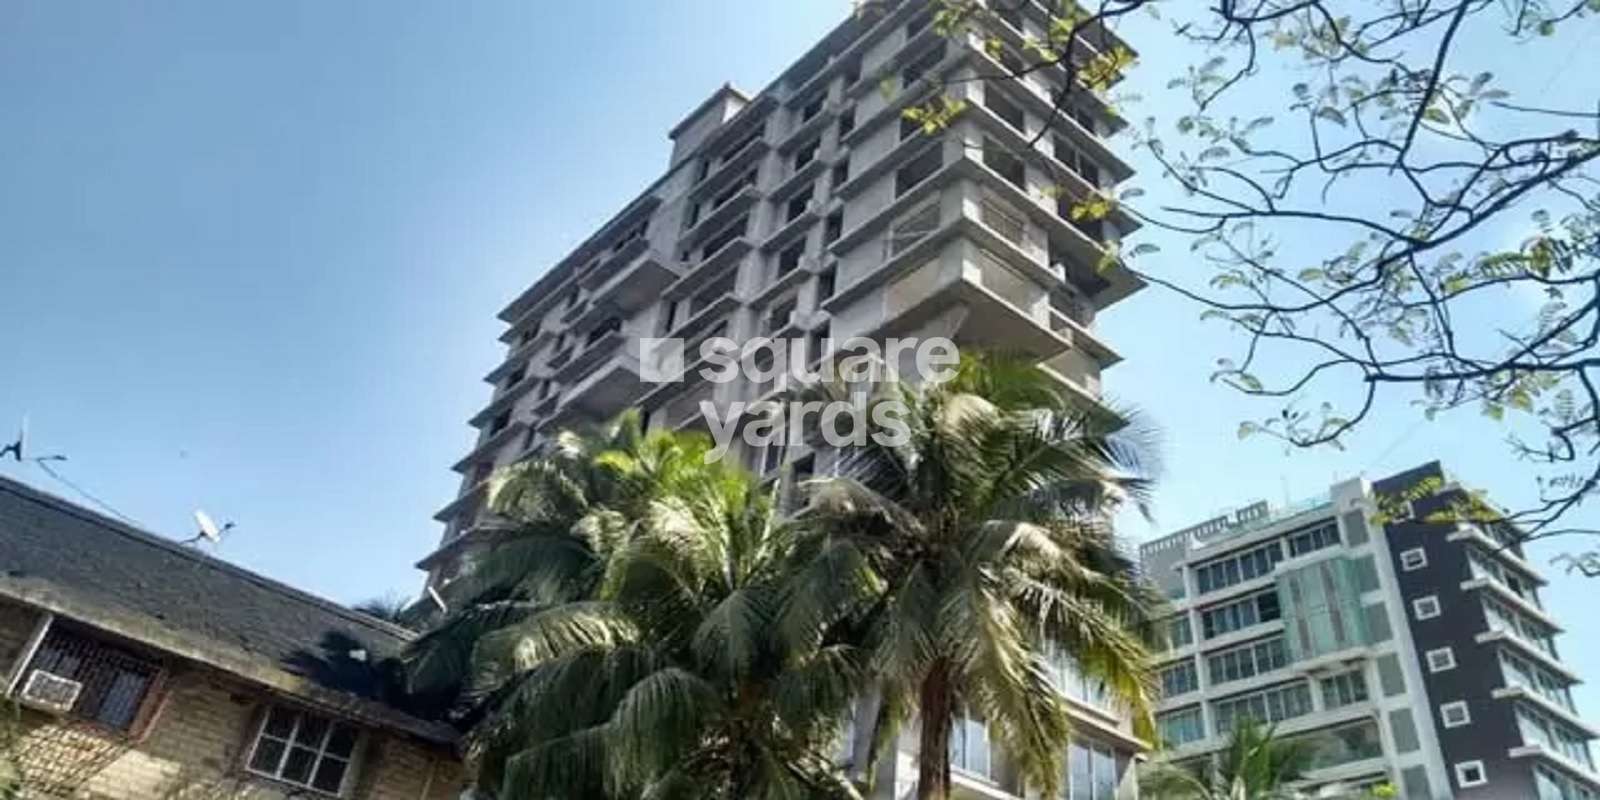 Mantri Sujata Apartment Cover Image